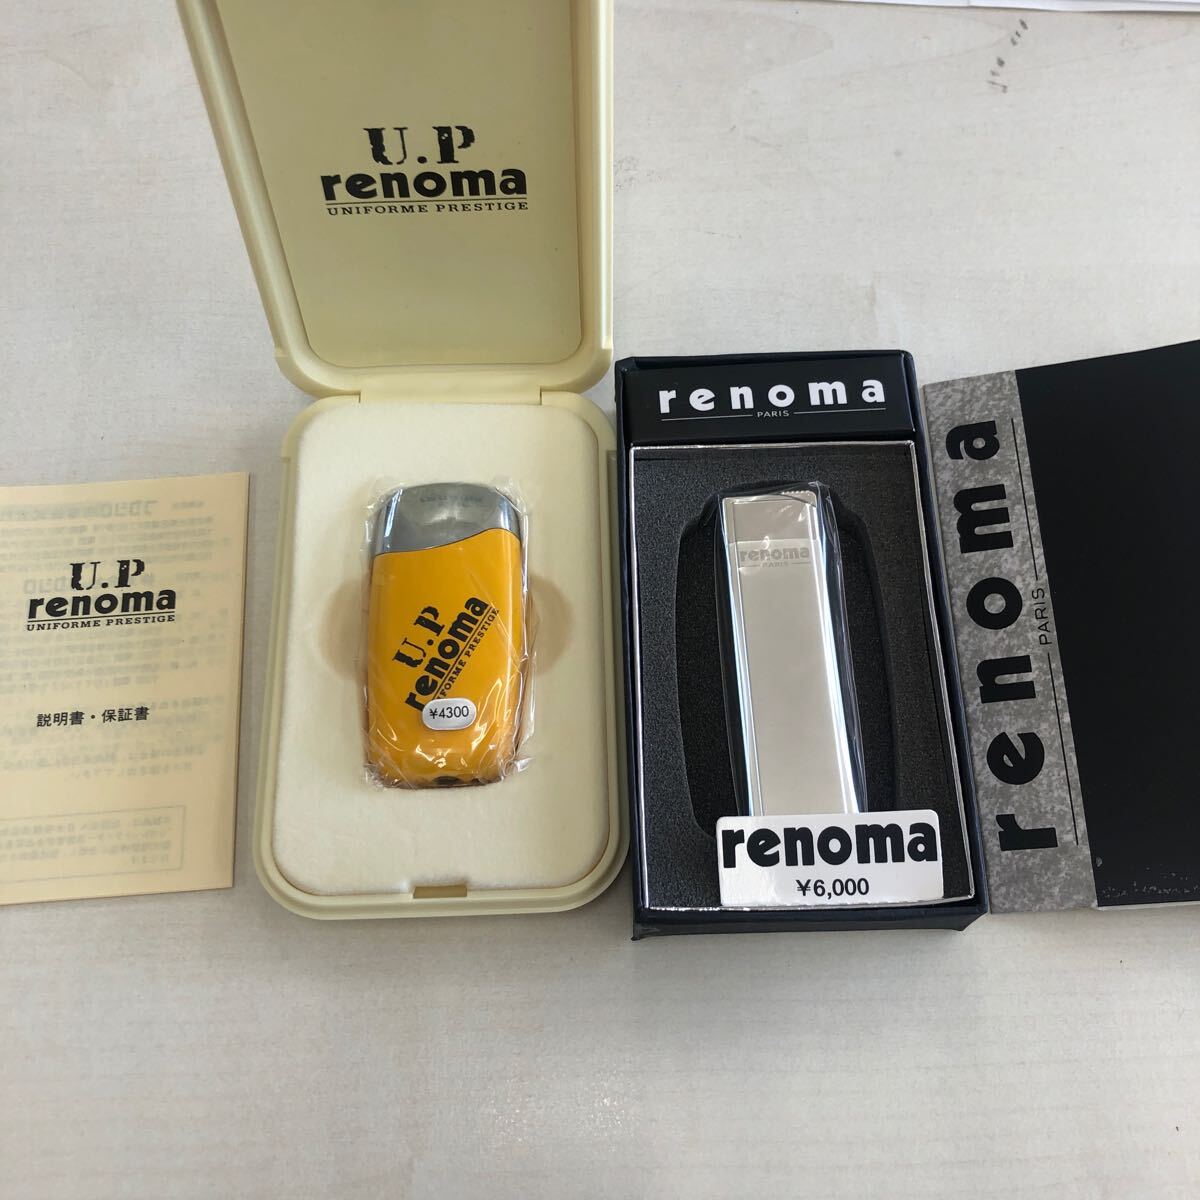 [ unused goods ] gas lighter smoking . smoking goods Renoma U.P renoma 2 piece set rare 